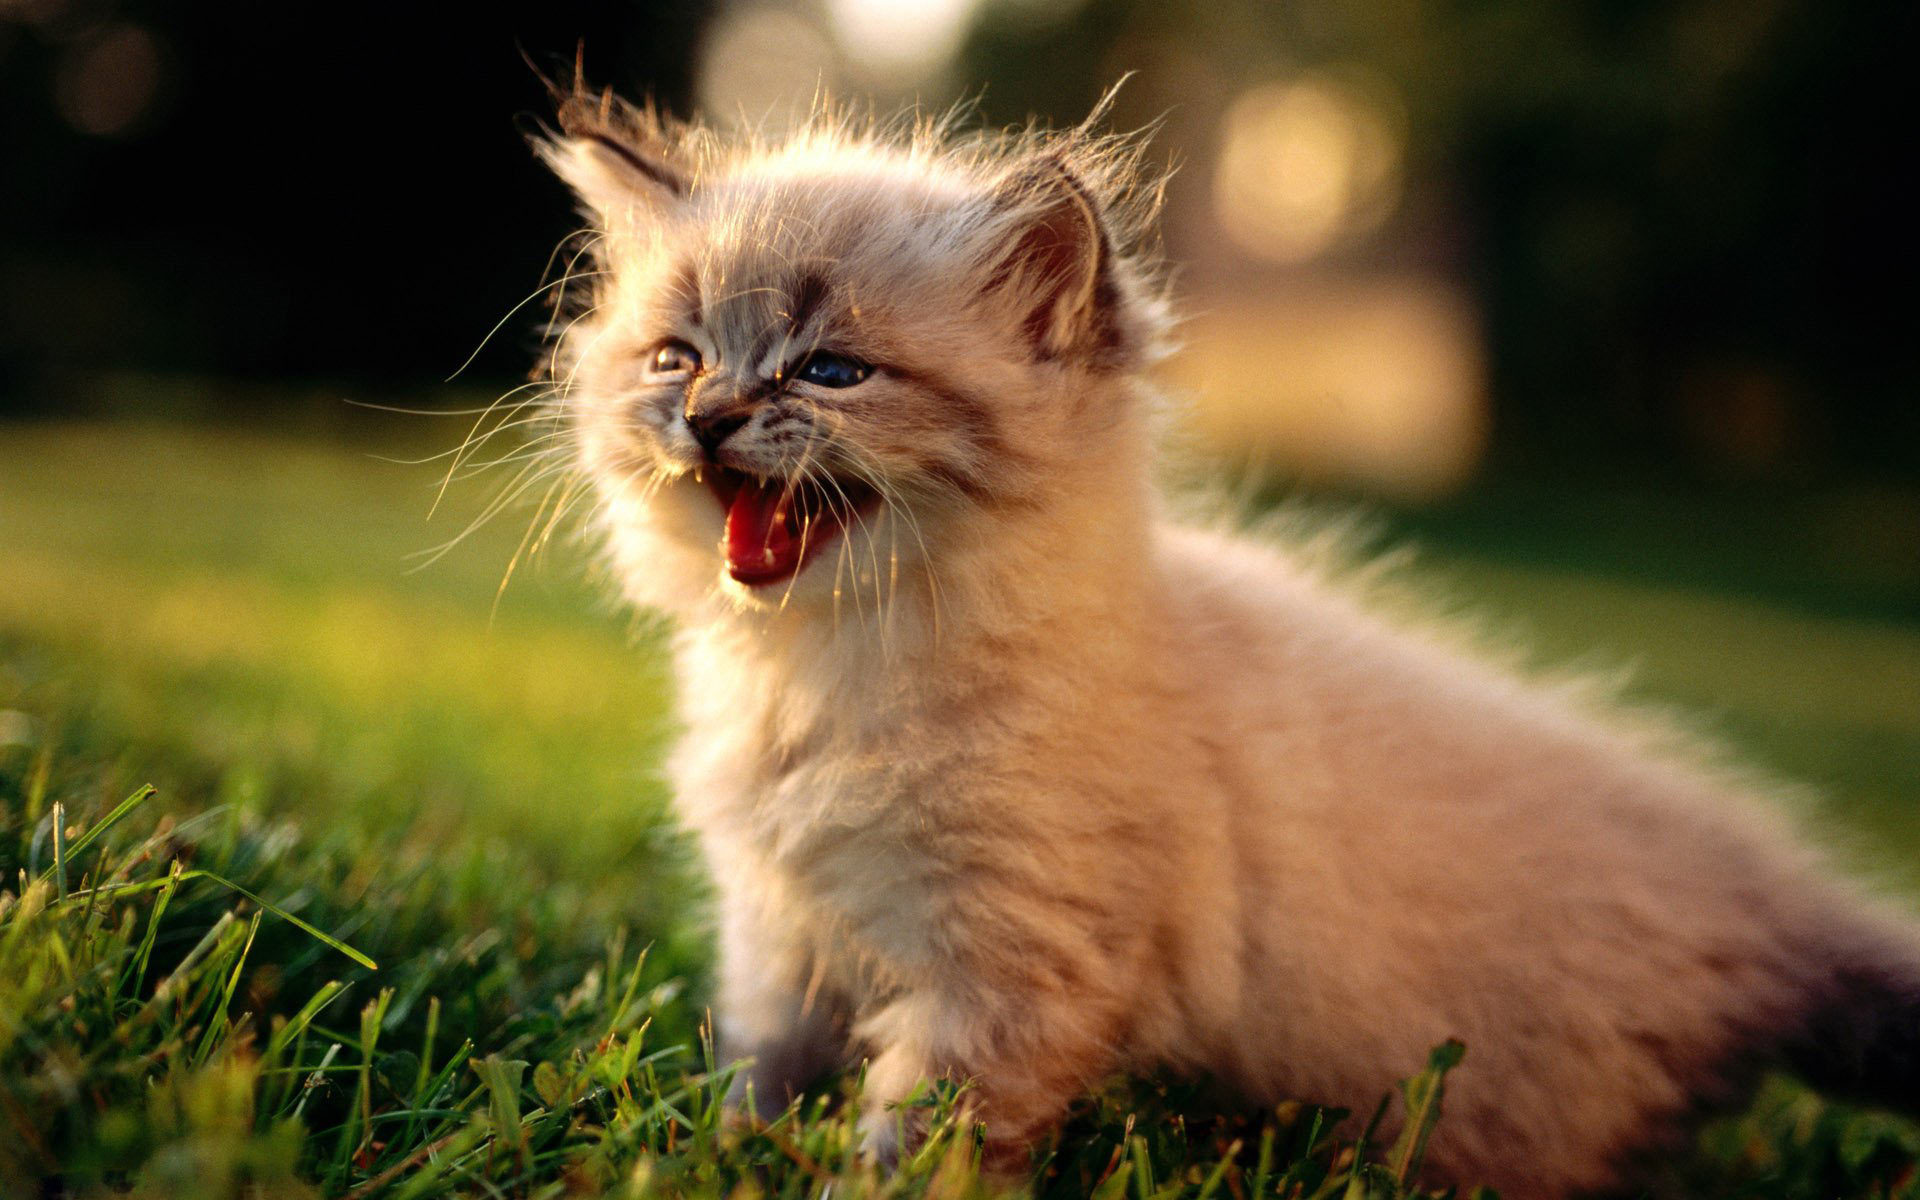 Cute-Little-Kitten-cute-kittens-